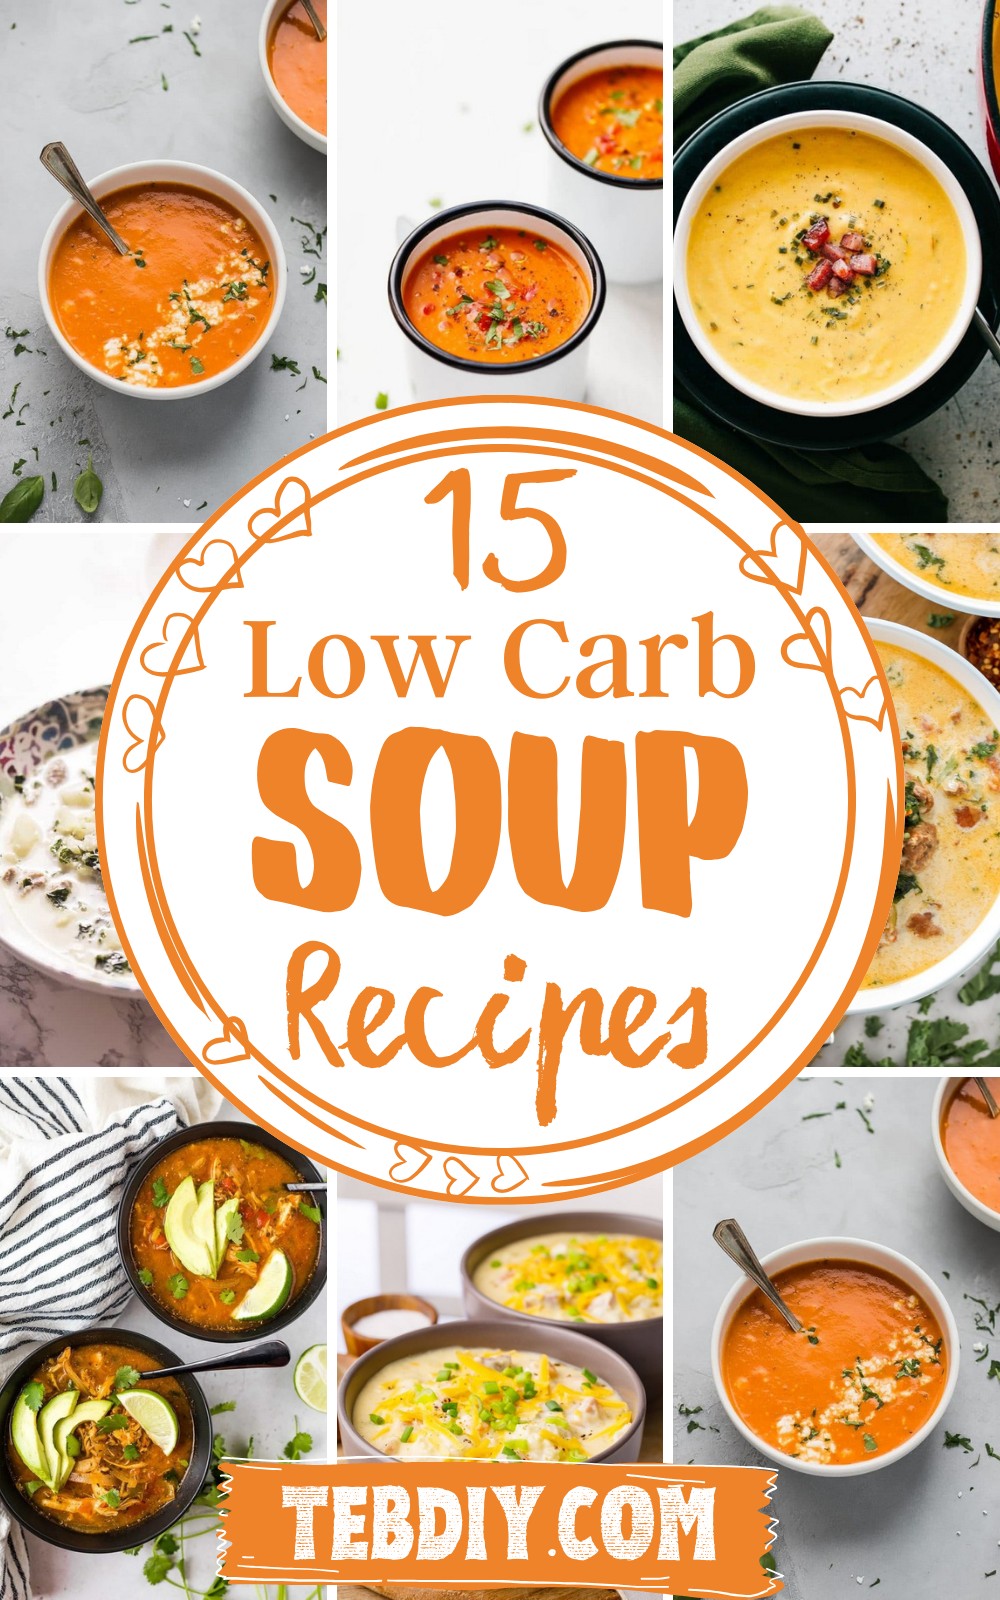 Low Carb Soup Recipes